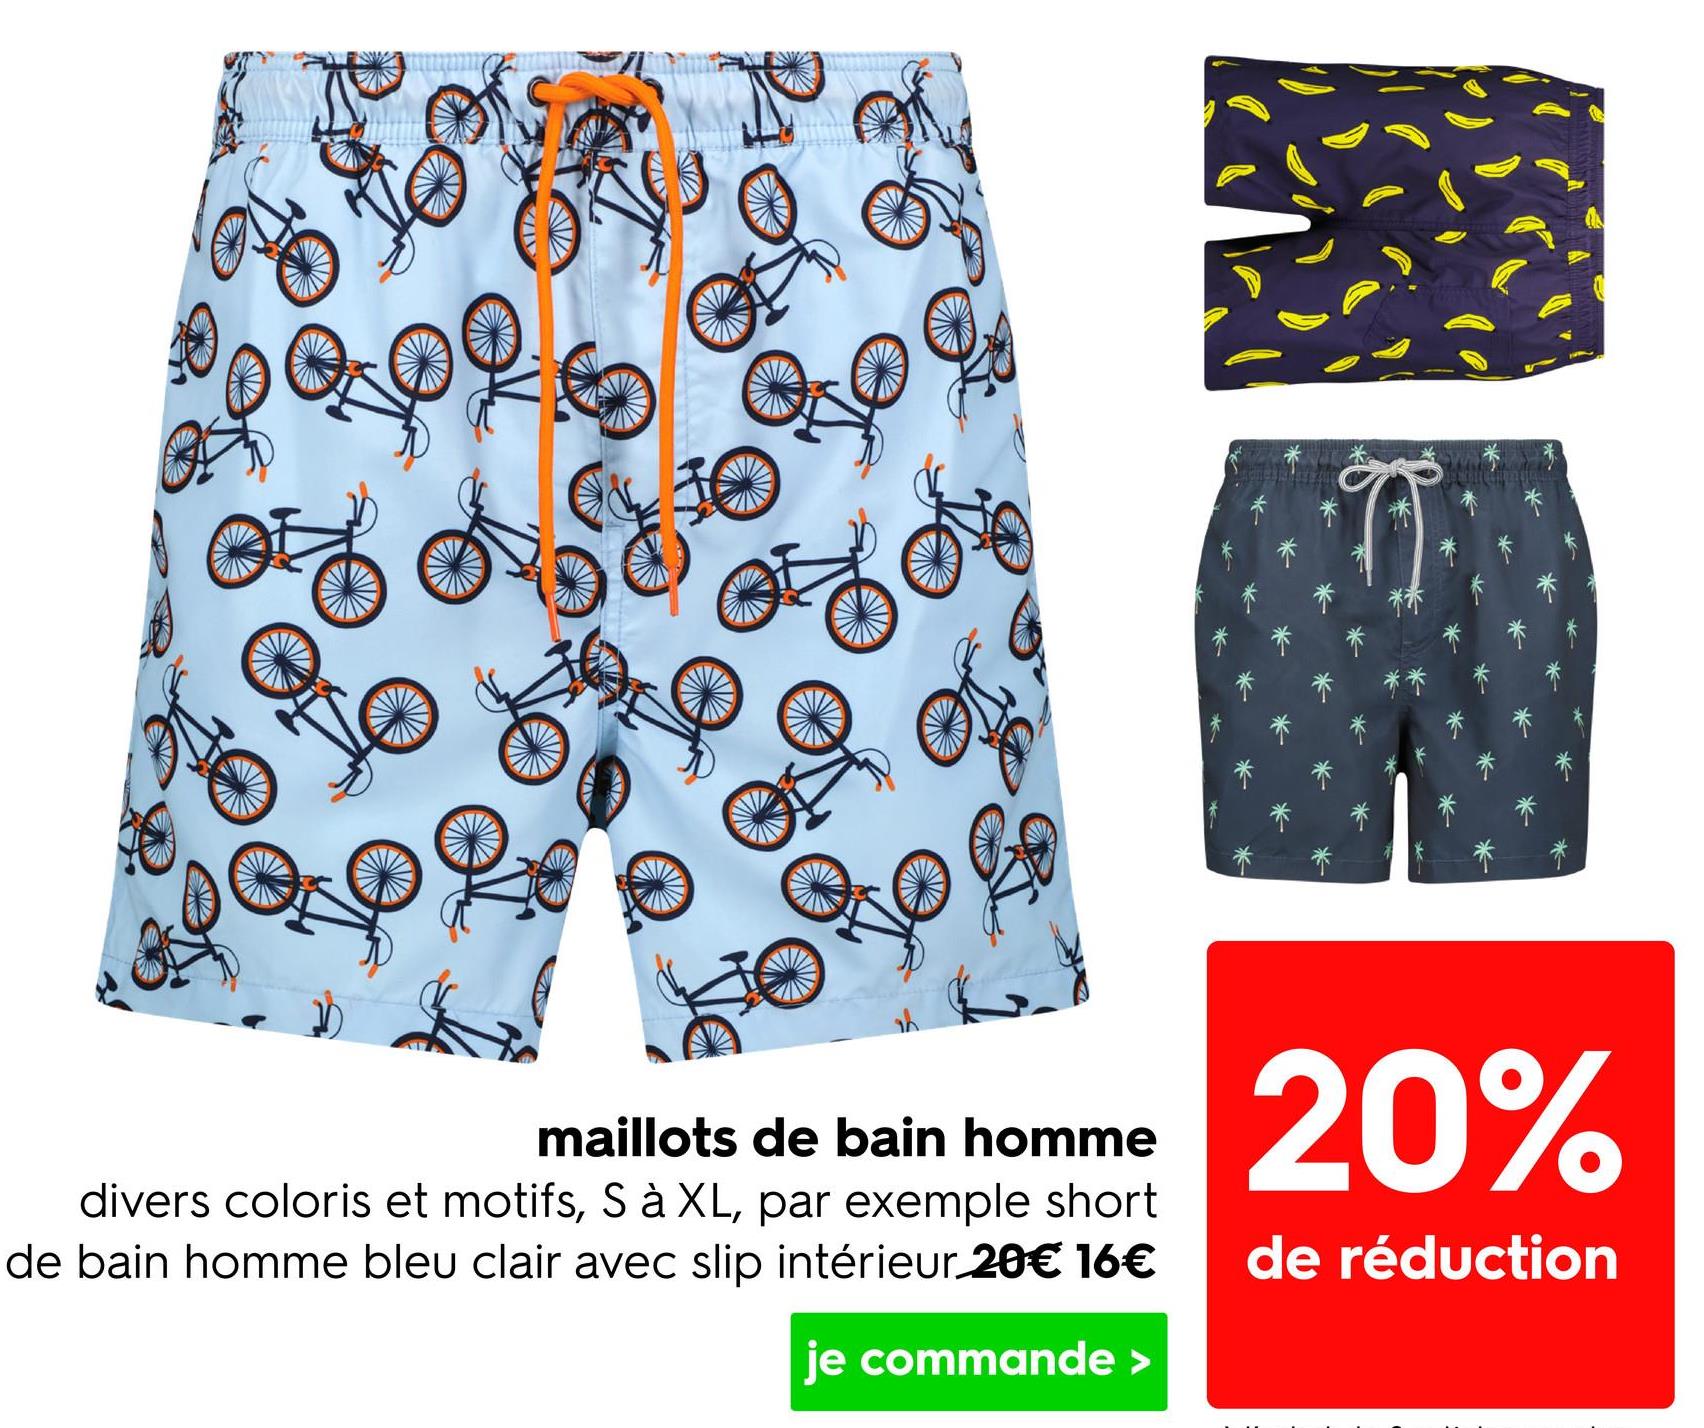 maillots de bain homme
divers coloris et motifs, S à XL, par exemple short
de bain homme bleu clair avec slip intérieur.20€ 16€
je commande >
20%
de réduction